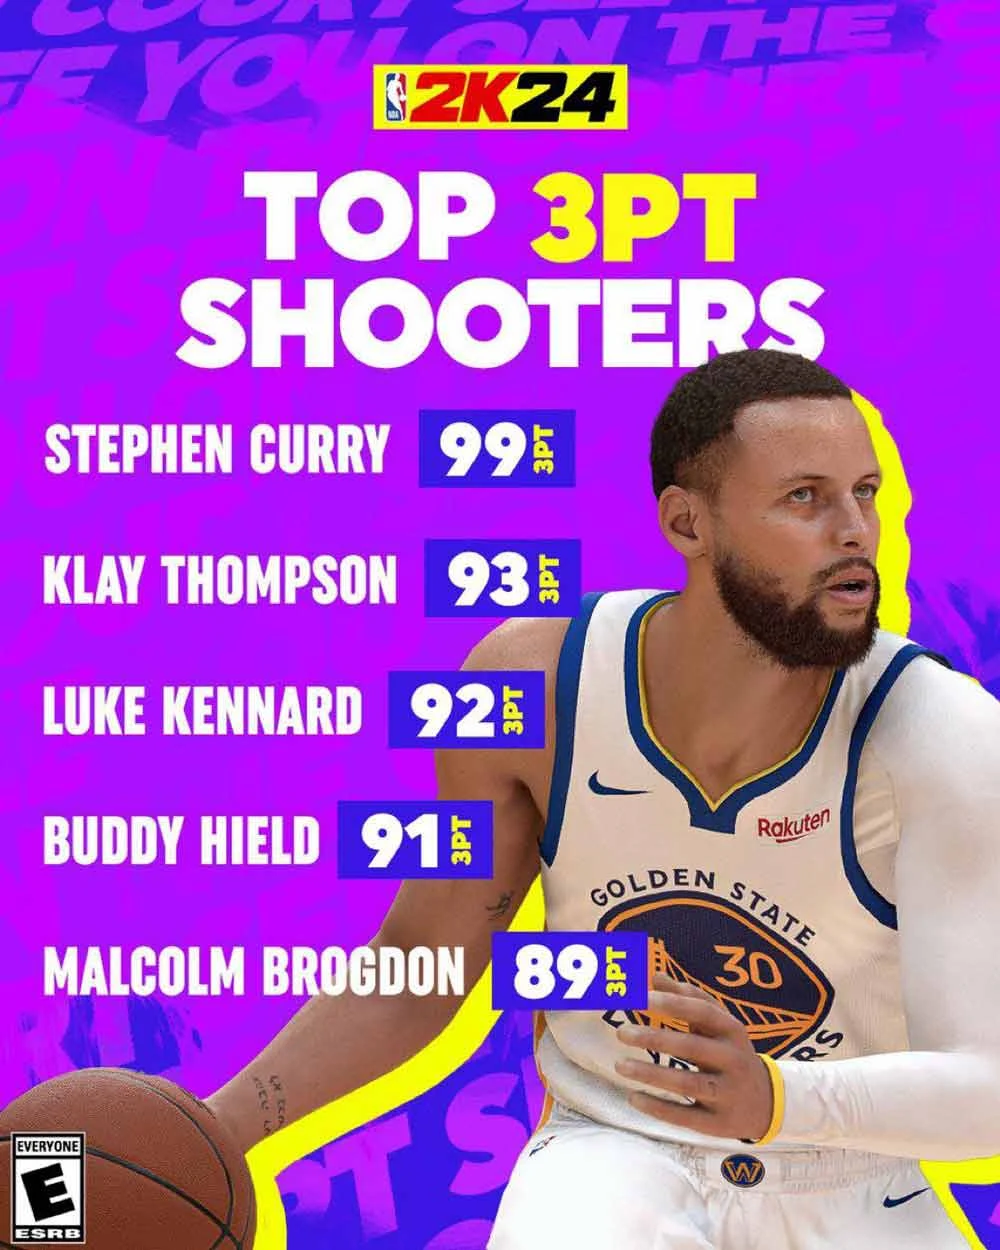 Top 3PT shooters in NBA 2K24